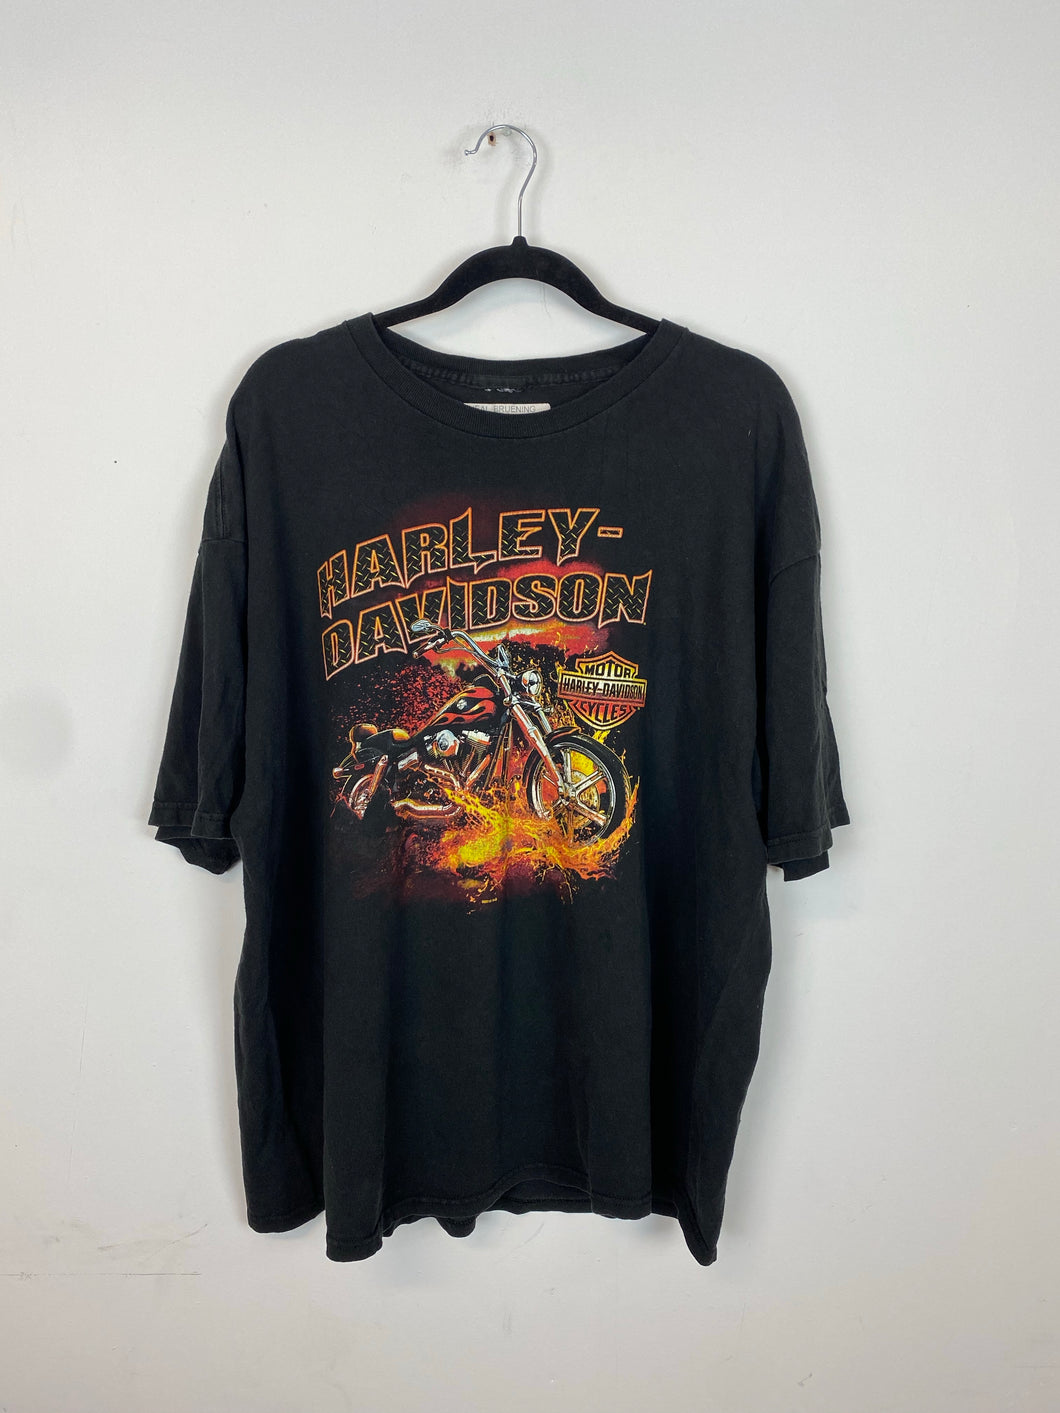 Vintage front and back Harley Davidson t shirt - M/L